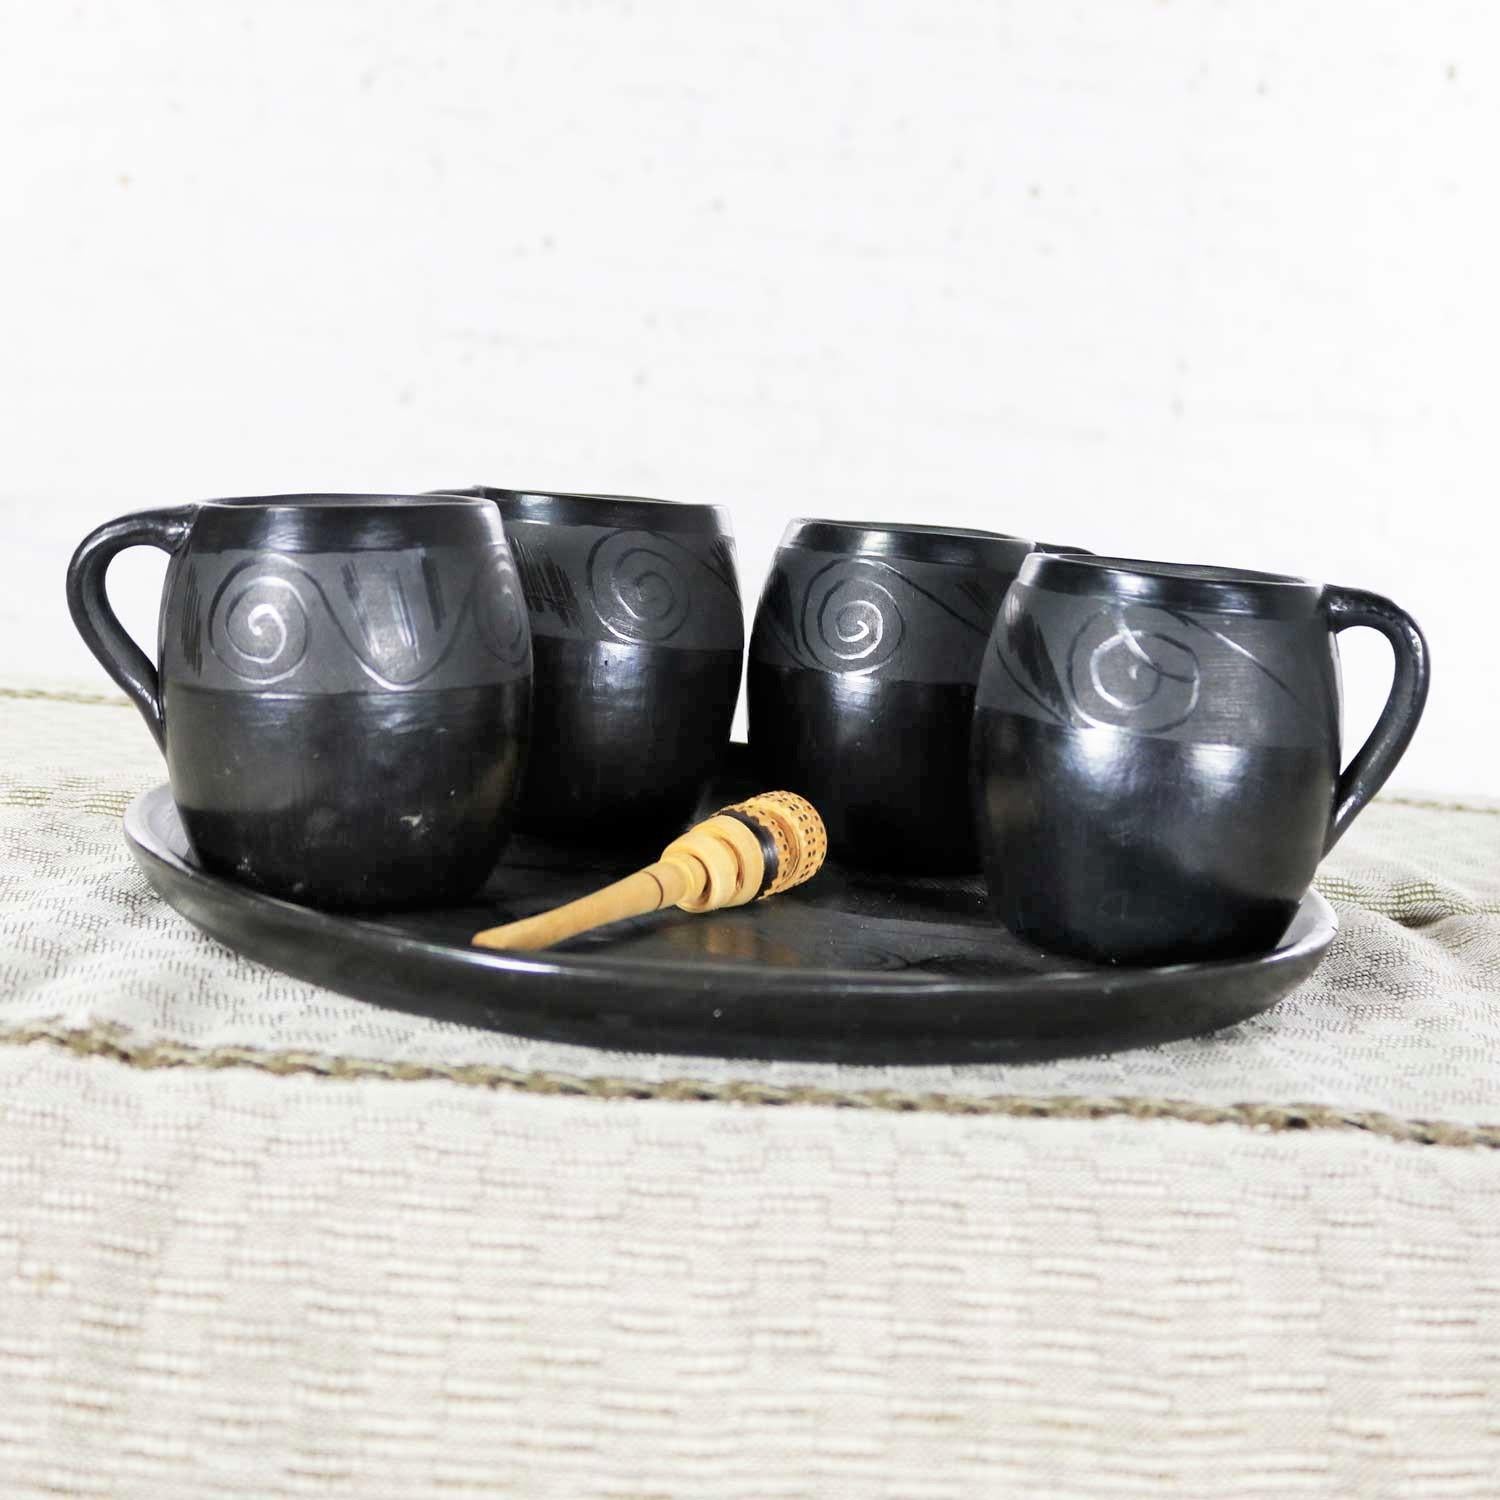 oaxaca pottery for sale